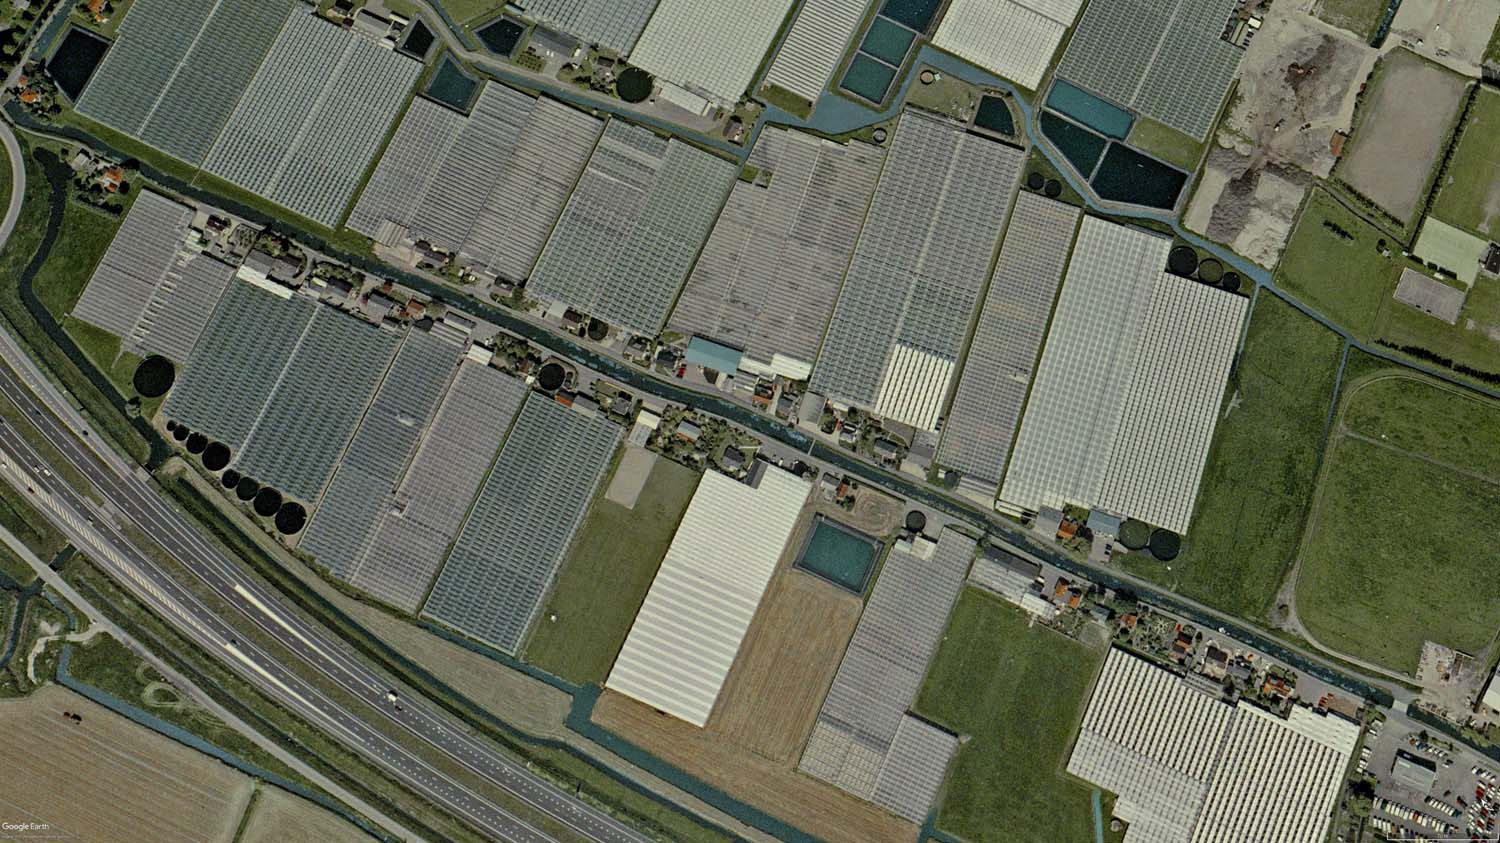 Harnaschwatering en het tuinbouwgebied nig in bedrijf in 2004. Foto Google Earth.